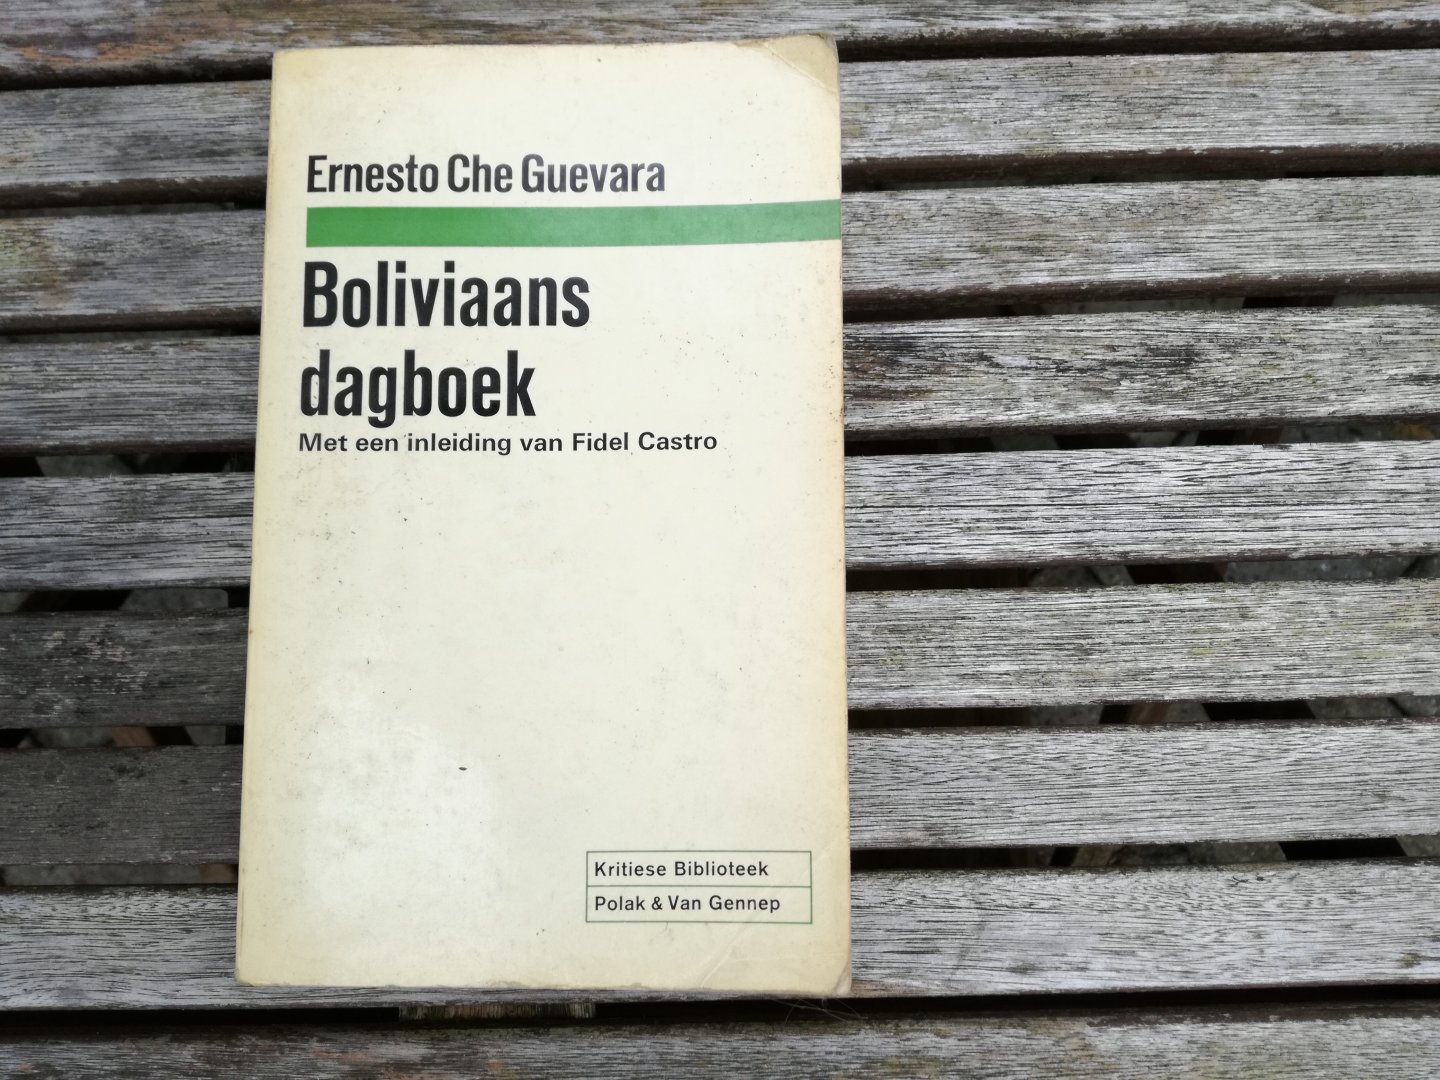 Guevara, Ernesto Che - Boliviaans dagboek